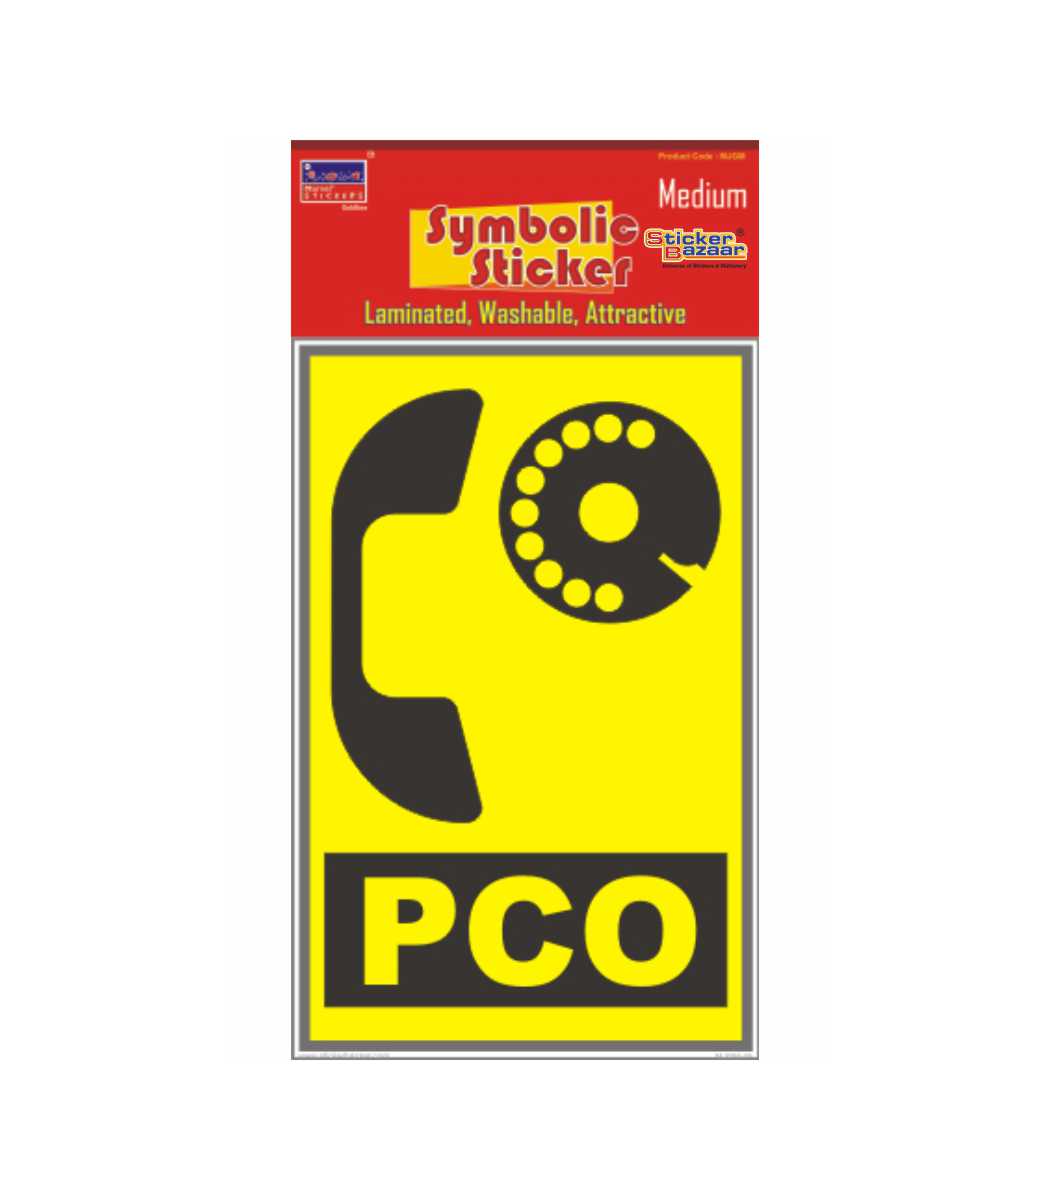 PCO Medium Symbolic Sticker